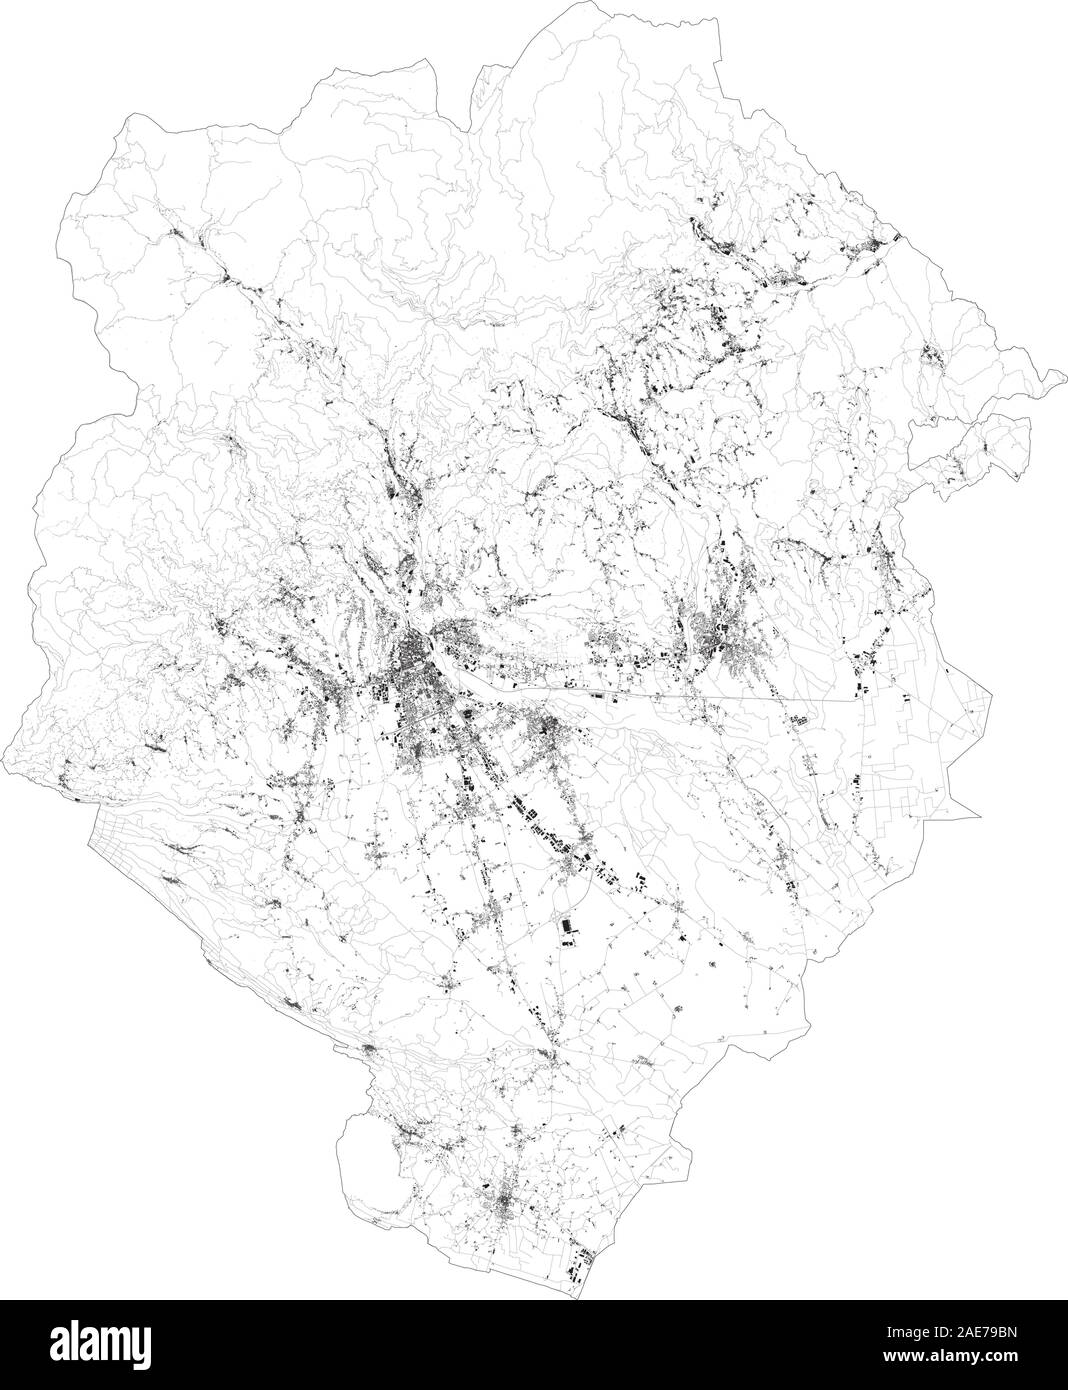 Sat-Karte der Provinz Biella, Städte und Straßen, Gebäude und Straßen der Umgebung. Piemont, Italien. Karte Straßen, Straßen Stock Vektor